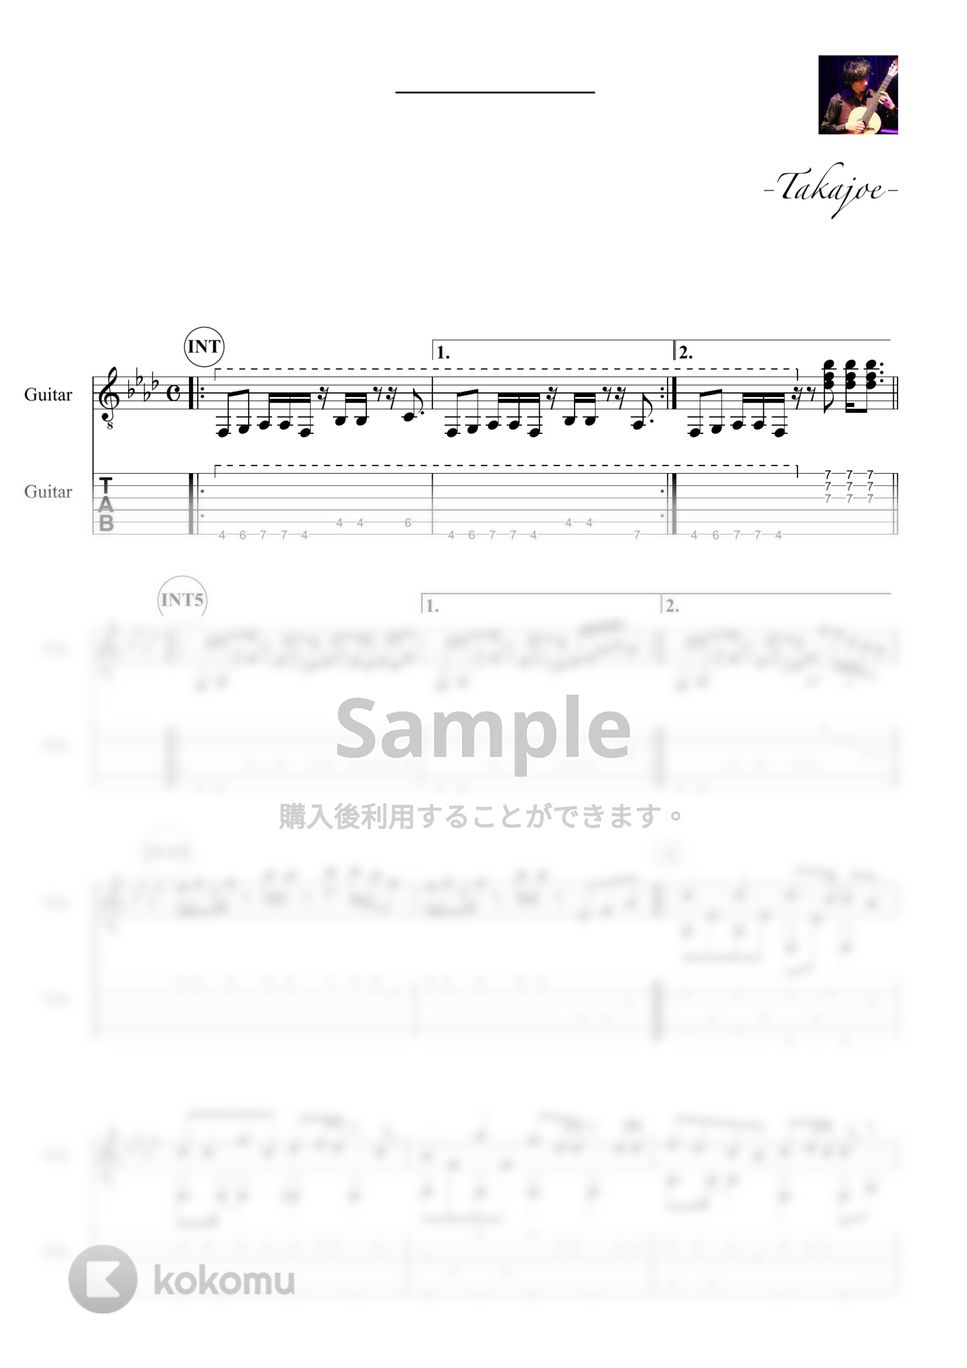 嵐メドレー - ARASHI on GUITAR (10曲収録) by 鷹城-Takajoe-